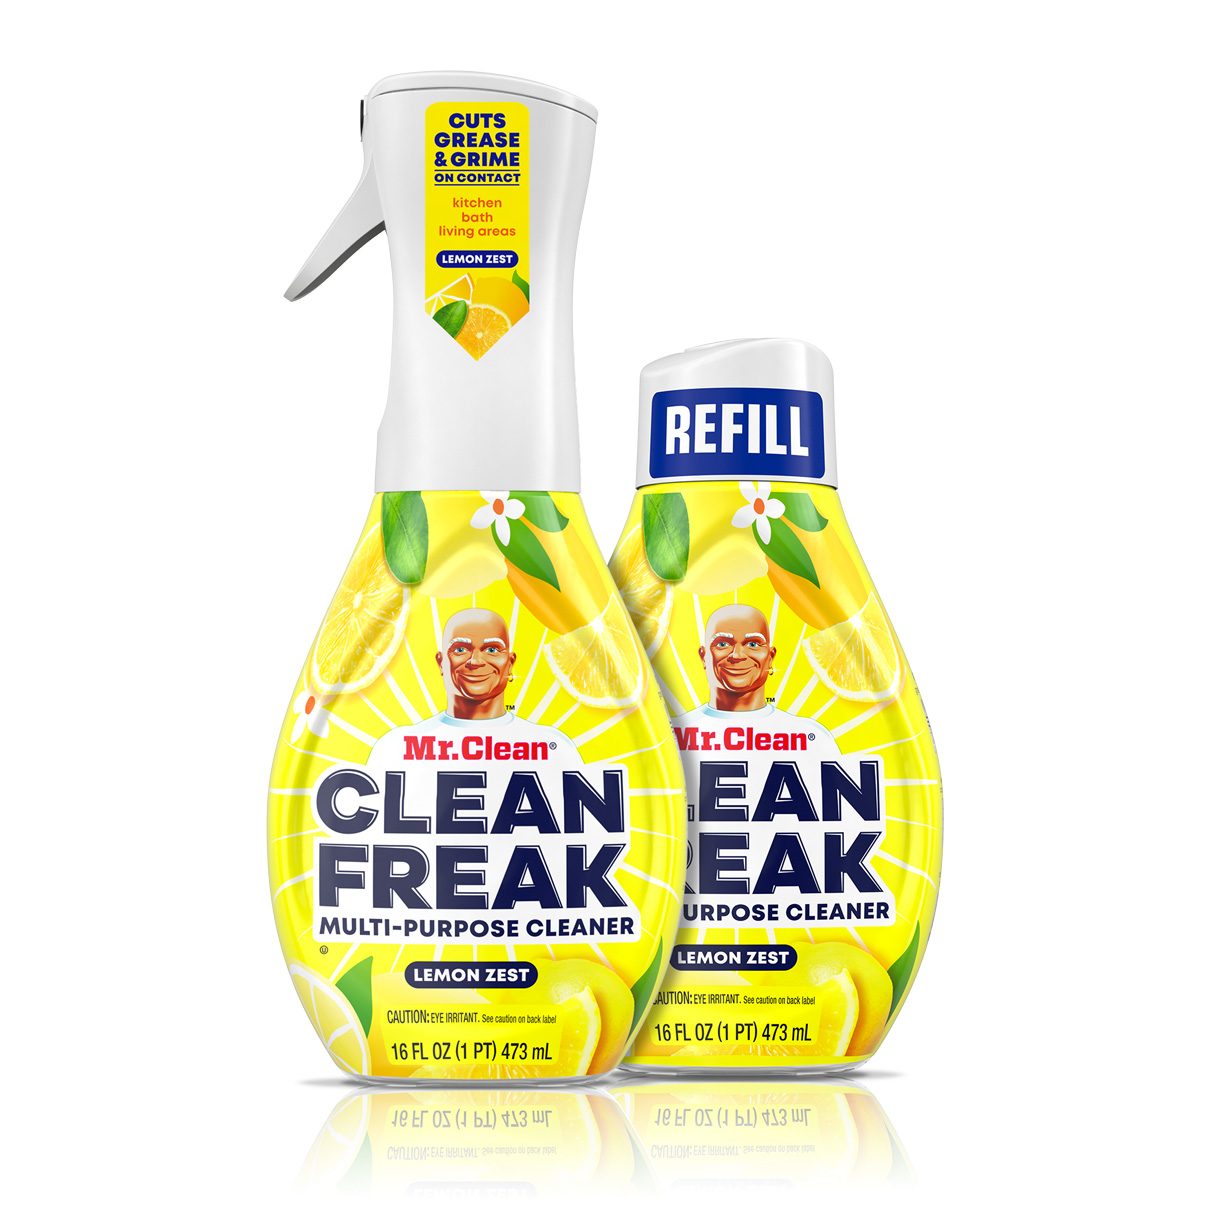 Clean-Freak Lemon zest With-EPA